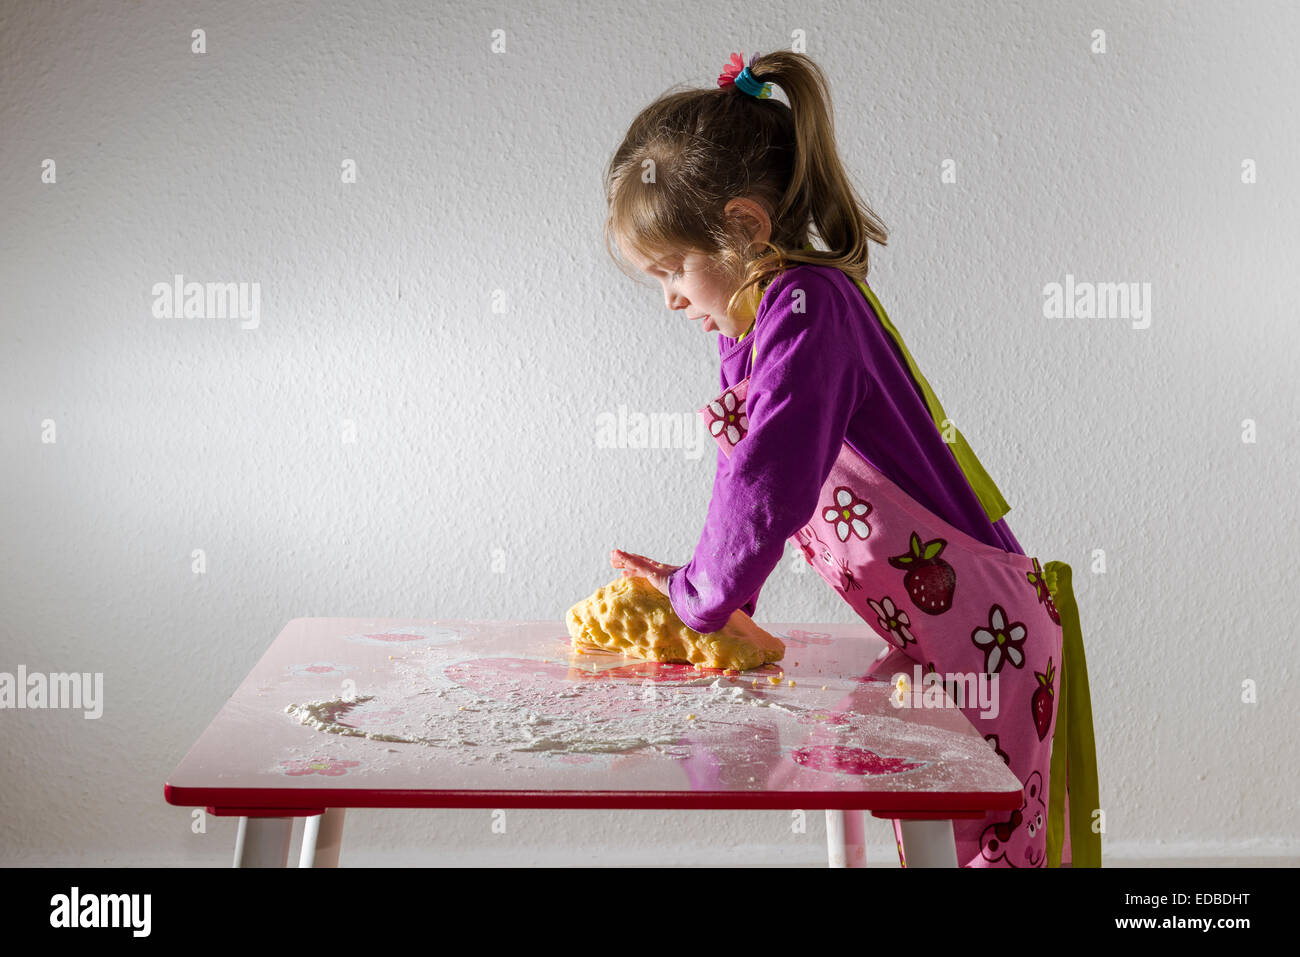 Mädchen, 3 Jahre, Backen, kneten einen Klumpen Teig auf einem Tisch Stockfoto